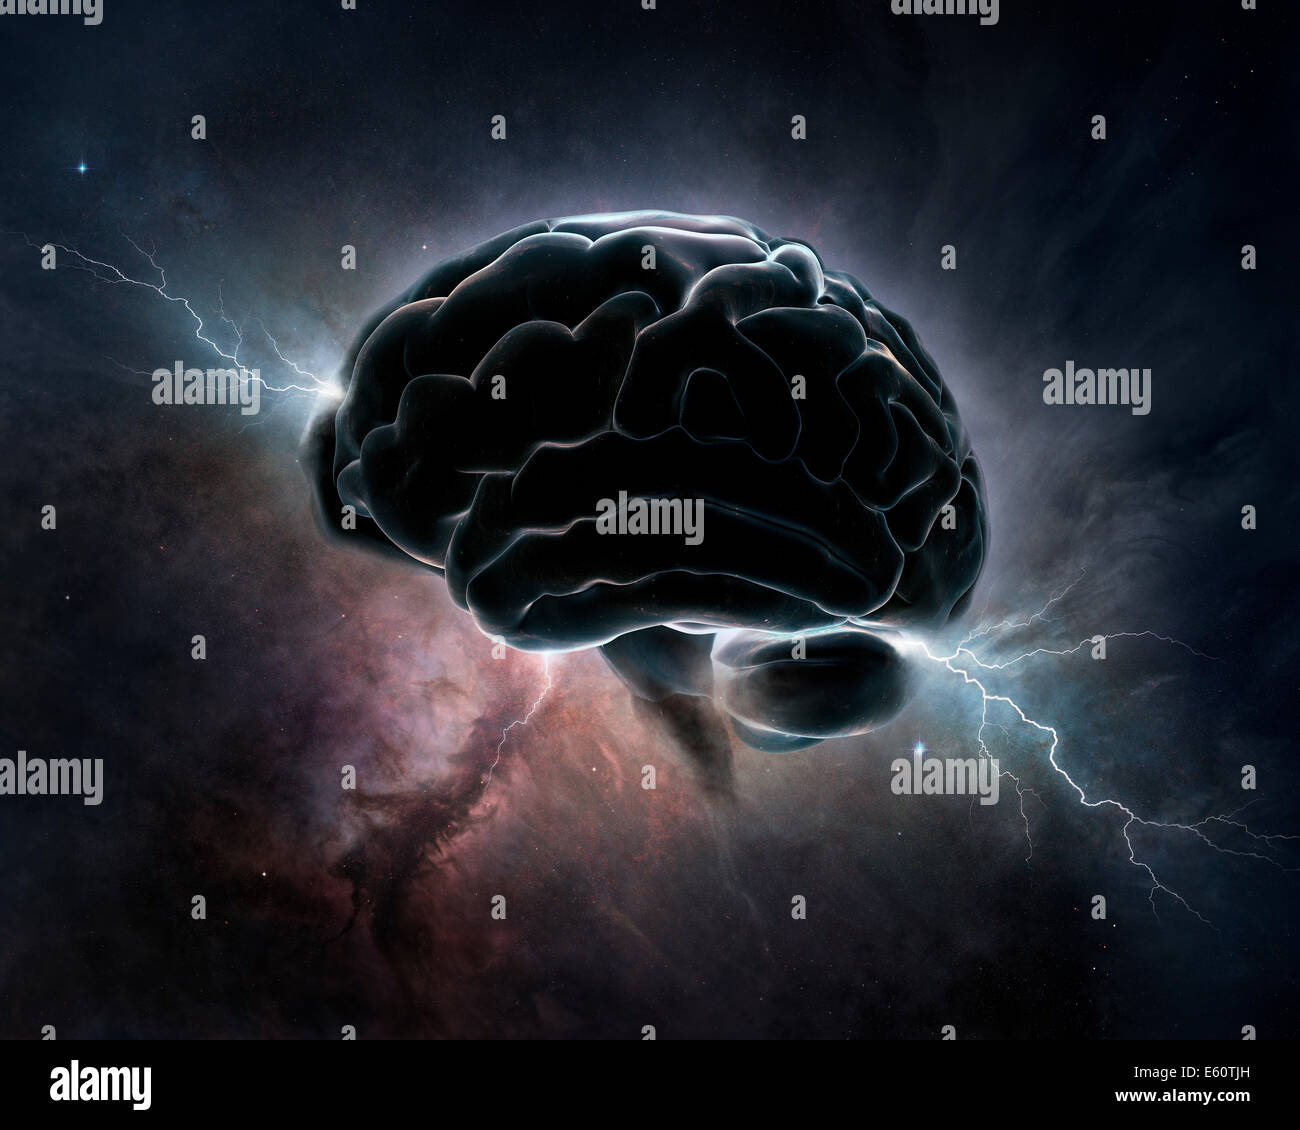 Gehirn miteinander verbunden mit dem Universum - konzeptionelle kosmische Intelligenz (Textur-Maps für 3D Rendering von der NASA) Stockfoto